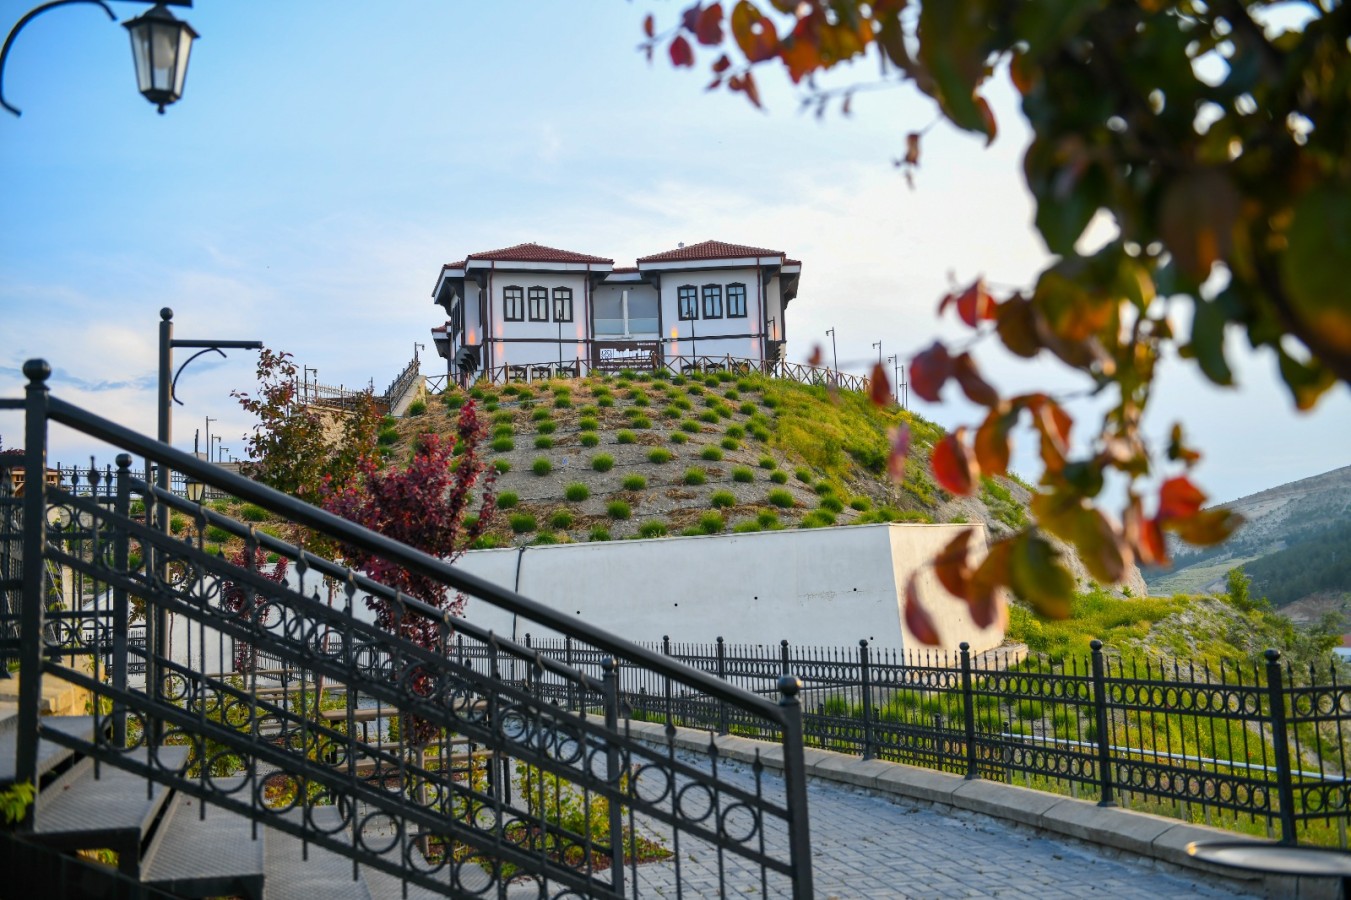 Beypazarı’nda Yeni Hizmet: Hıdırlık Butik Otel Hizmete Açıldı